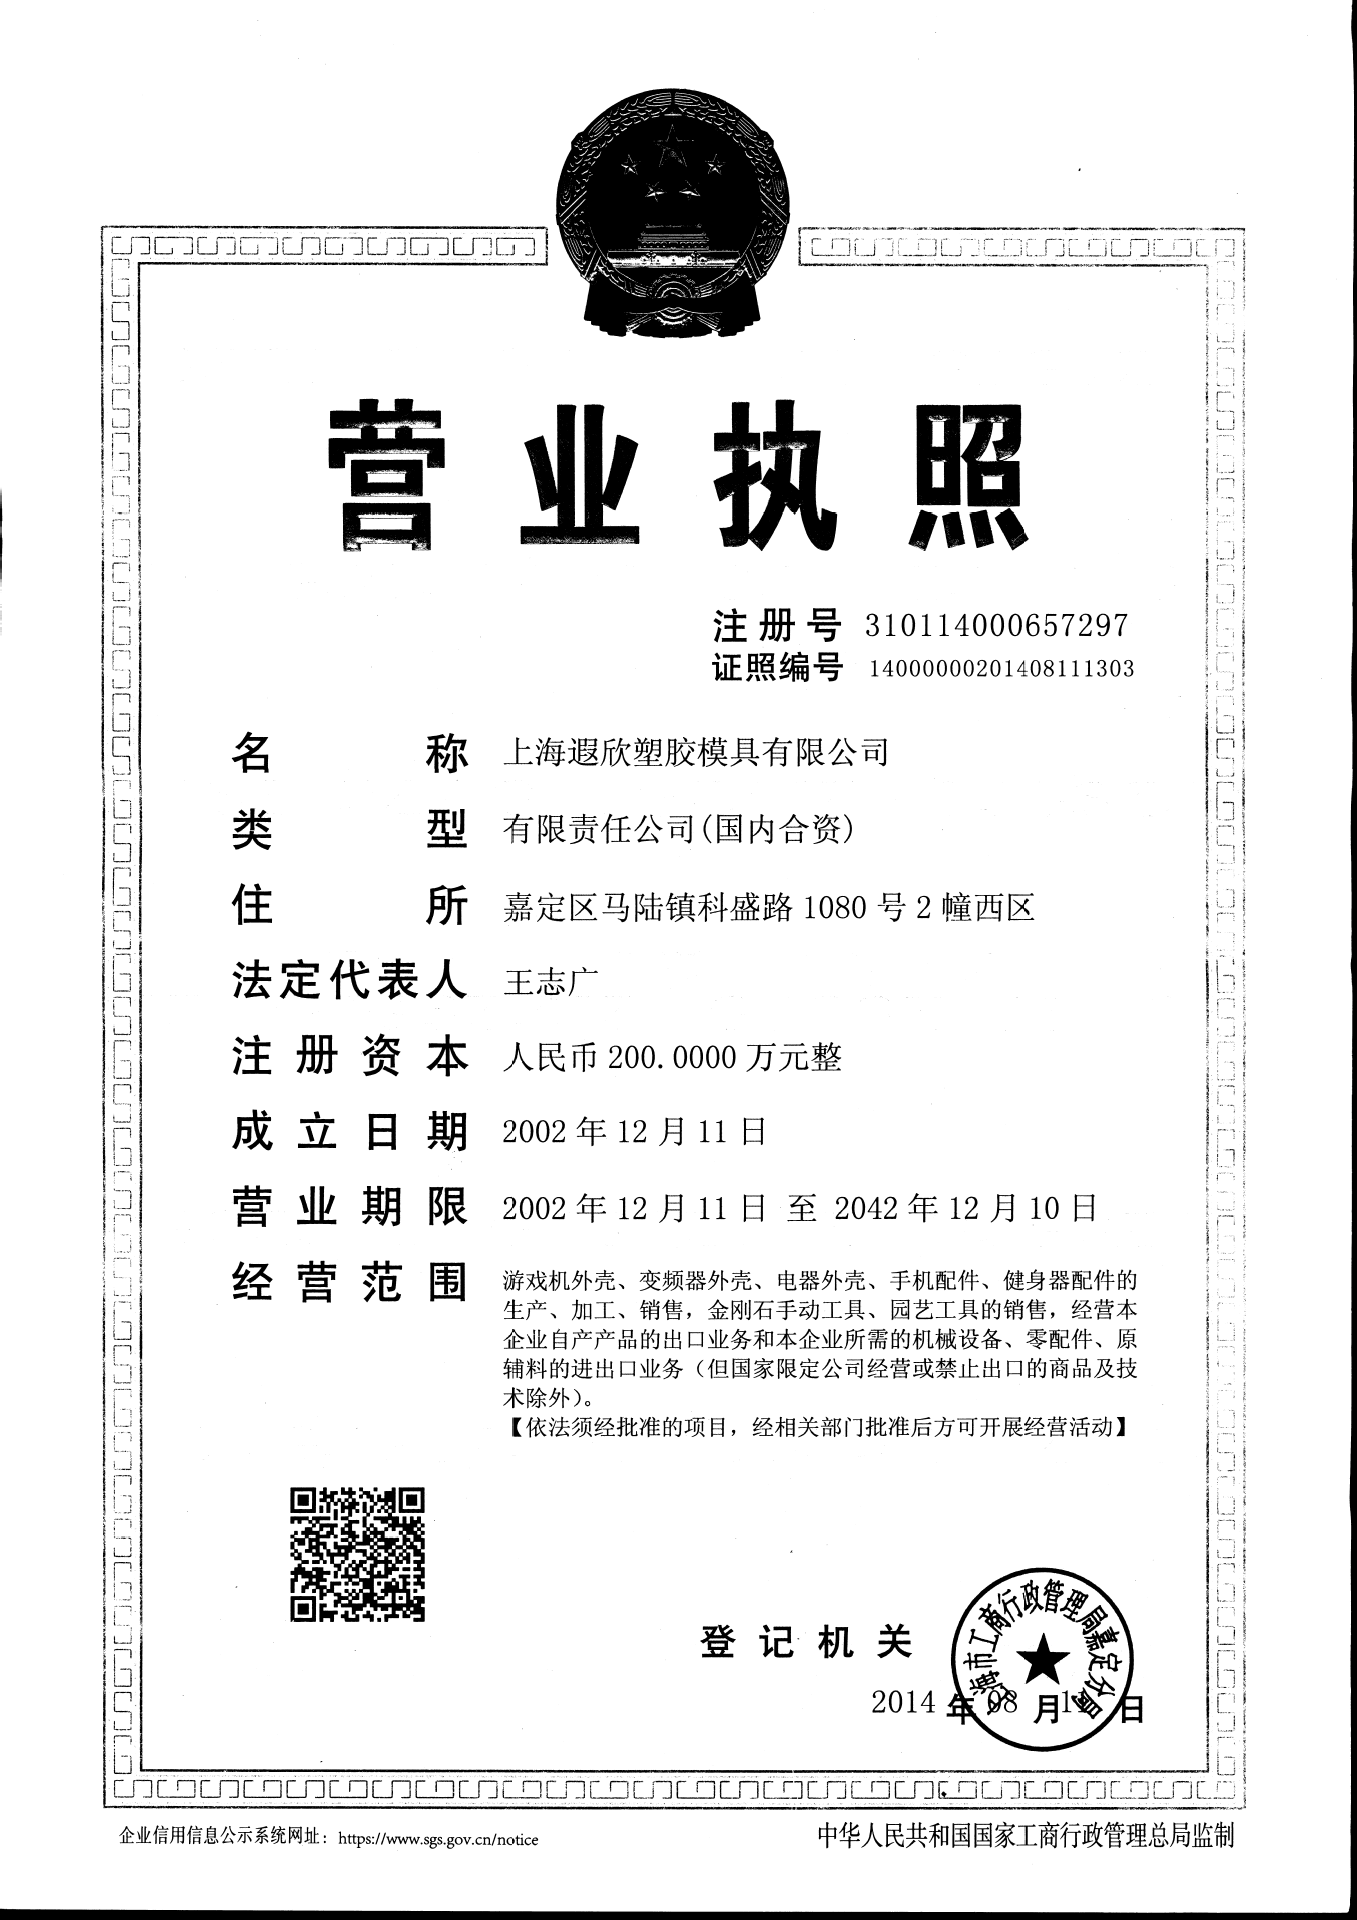 遐欣营业执照-2014